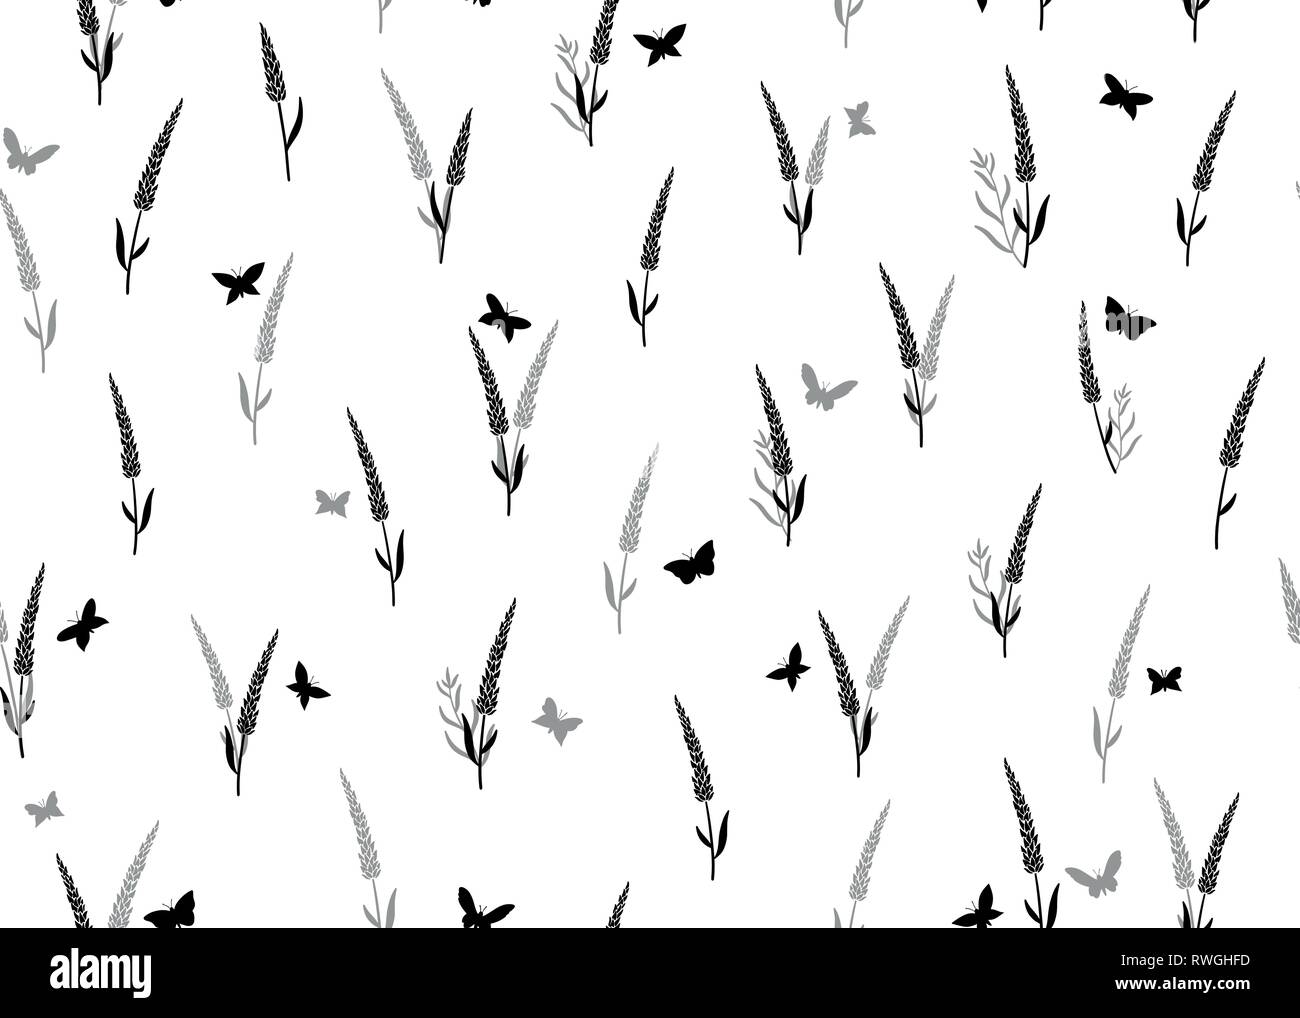 Fiori di lavanda con farfalle seamless pattern. Illustrazione Vettoriale nero su sfondo bianco. Per i tessili, web, stampa, superficie di progettazione Illustrazione Vettoriale